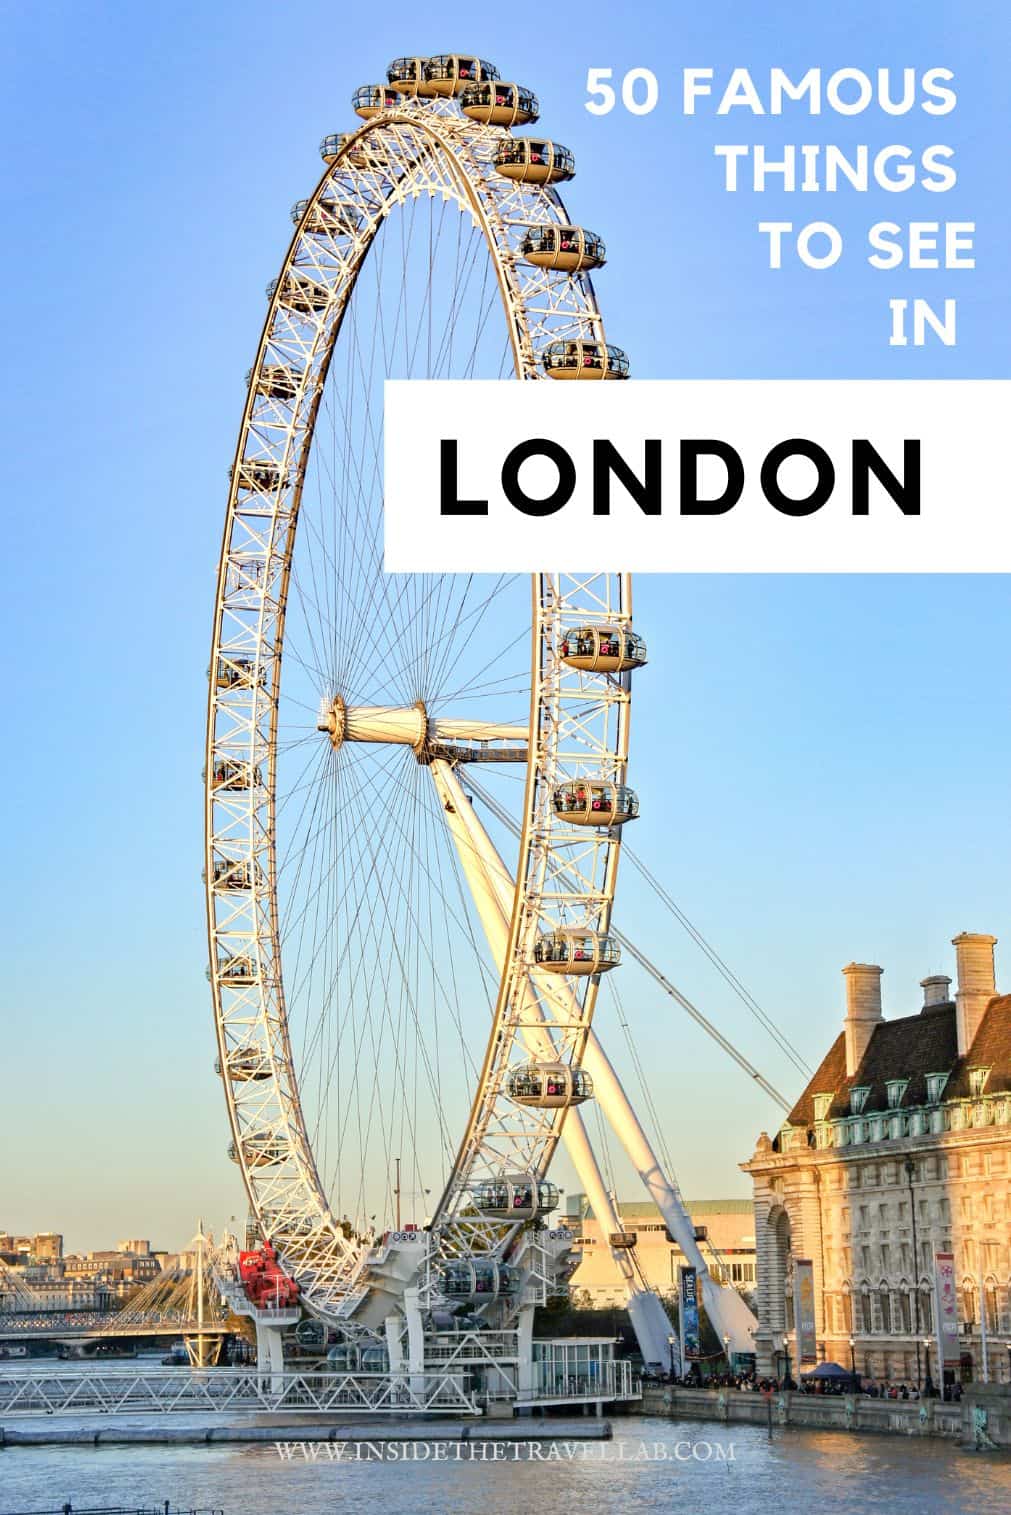 Изображение на обложке знаменитых достопримечательностей Лондона.